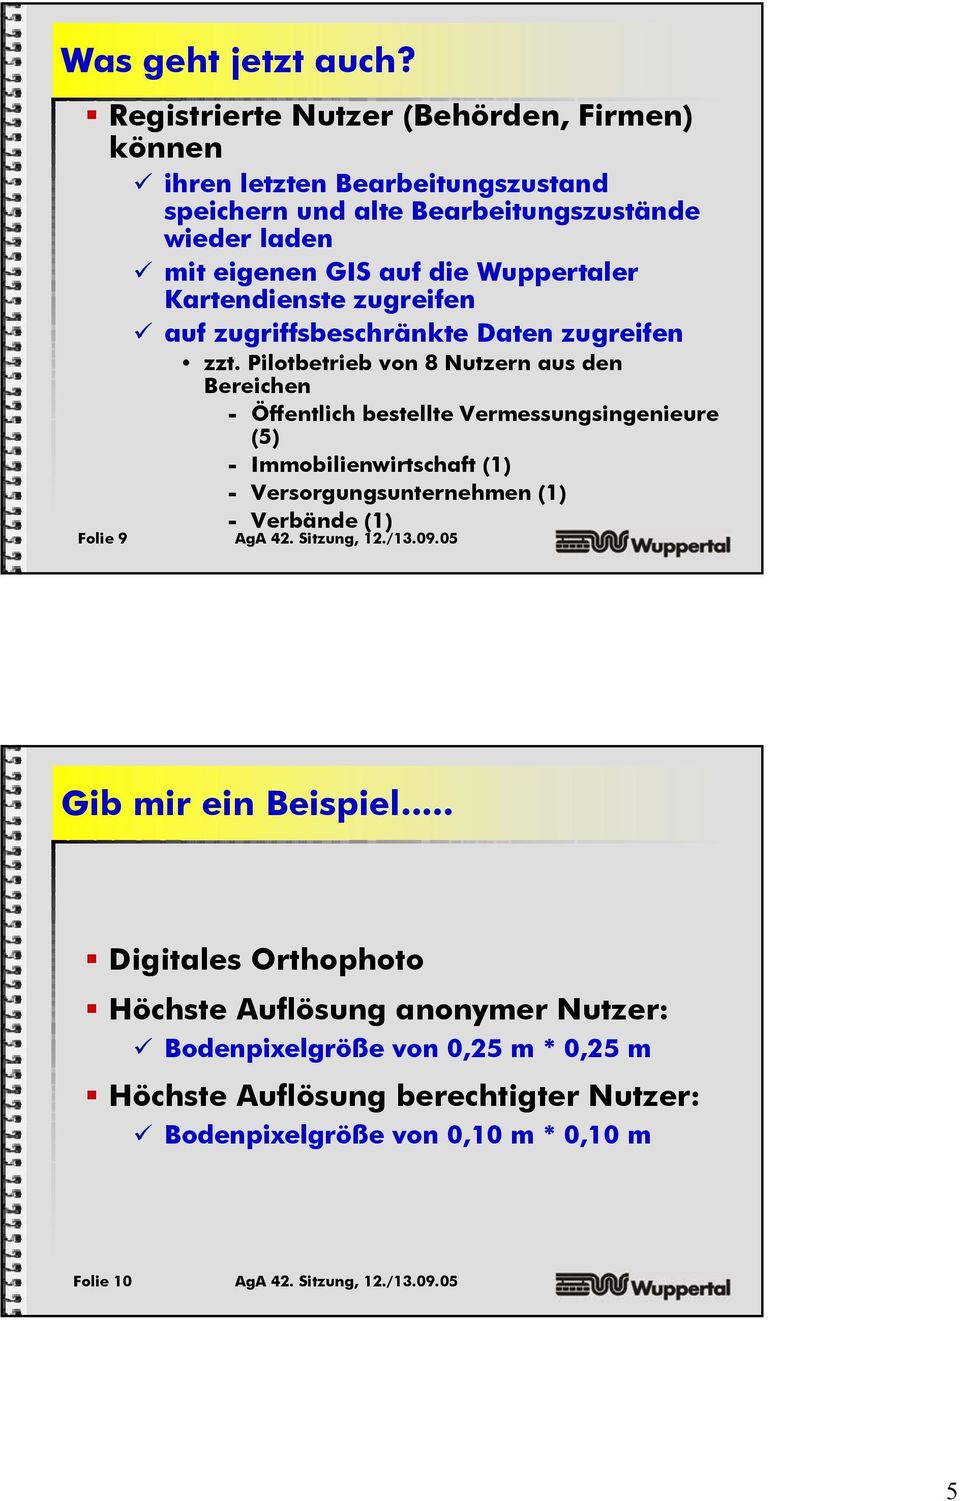 Wuppertaler Kartendienste zugreifen auf zugriffsbeschränkte zugreifen zzt.